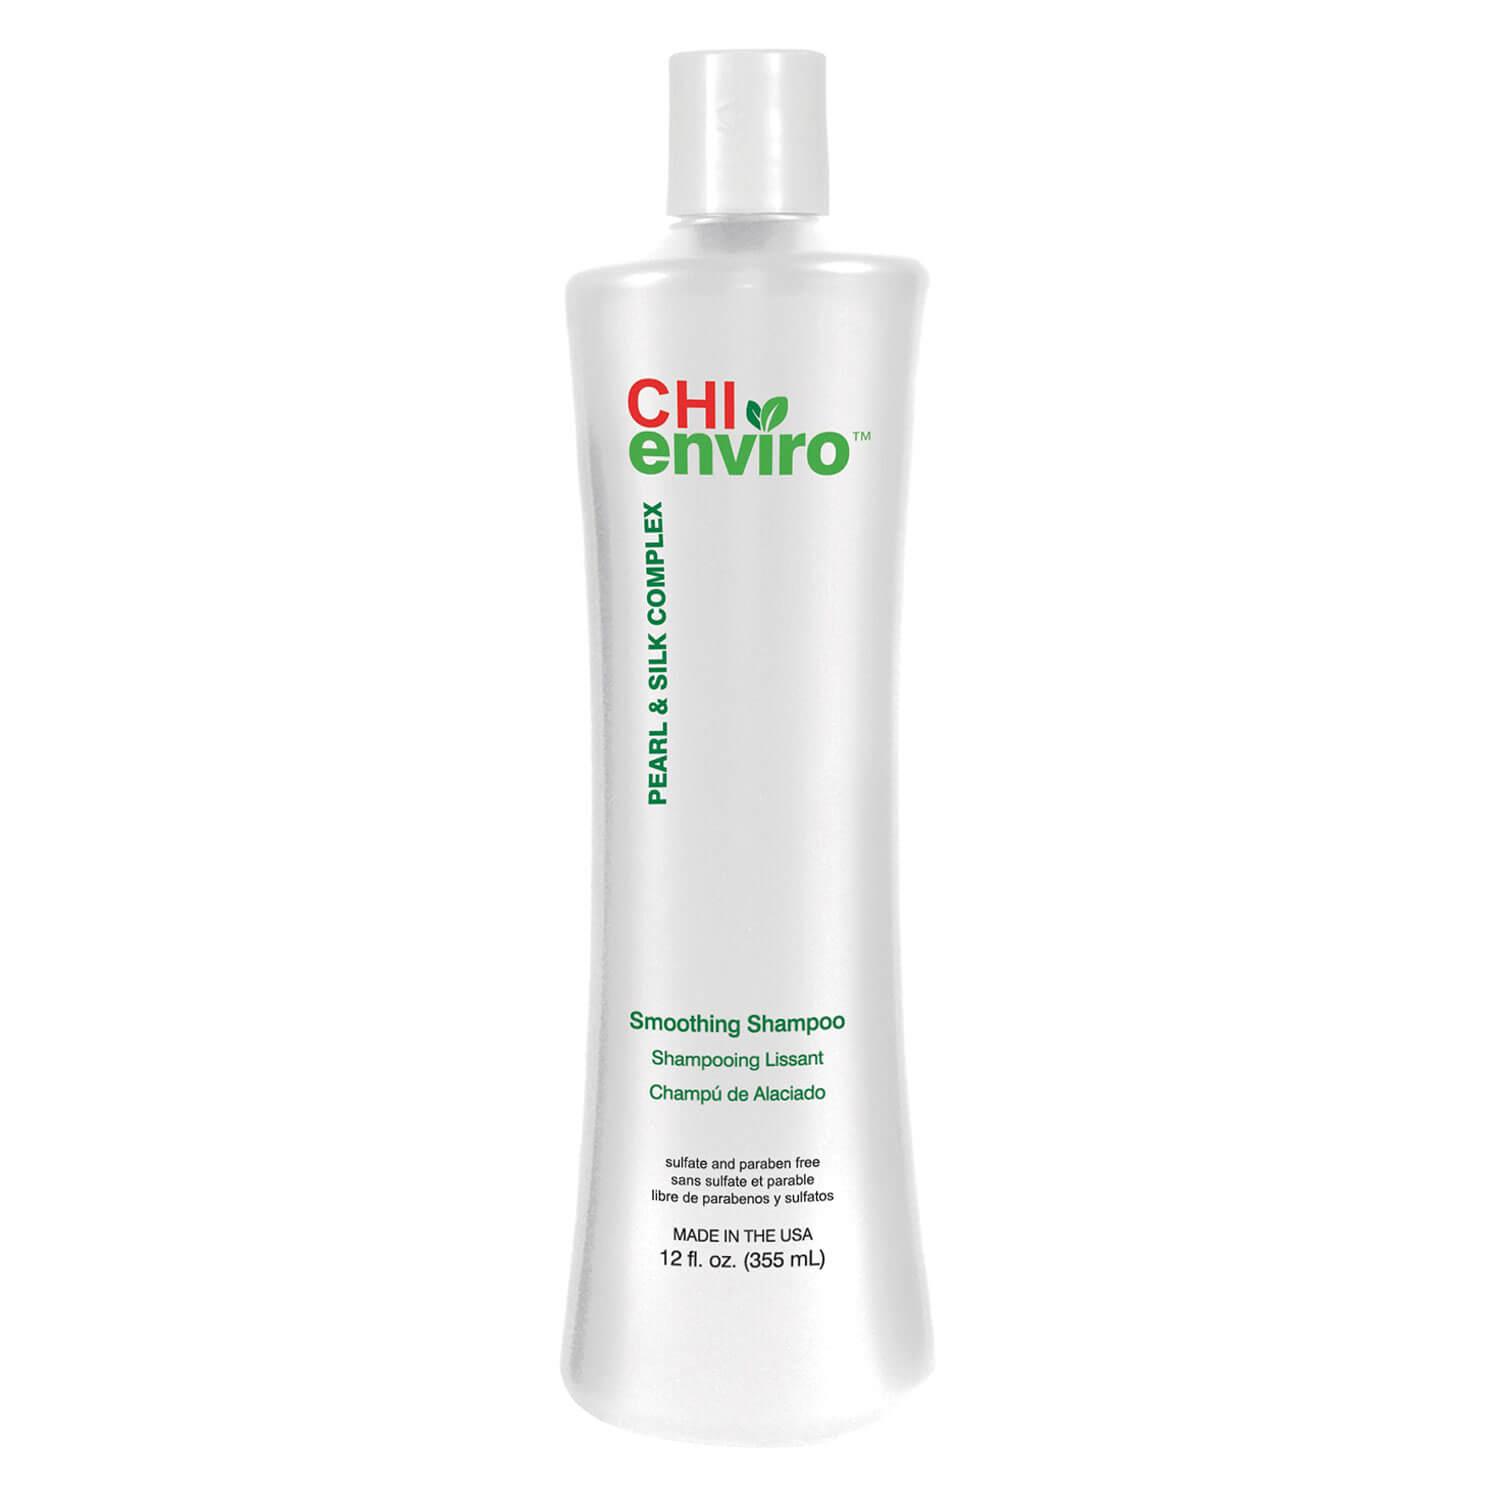 CHI enviro - Smoothing Shampoo